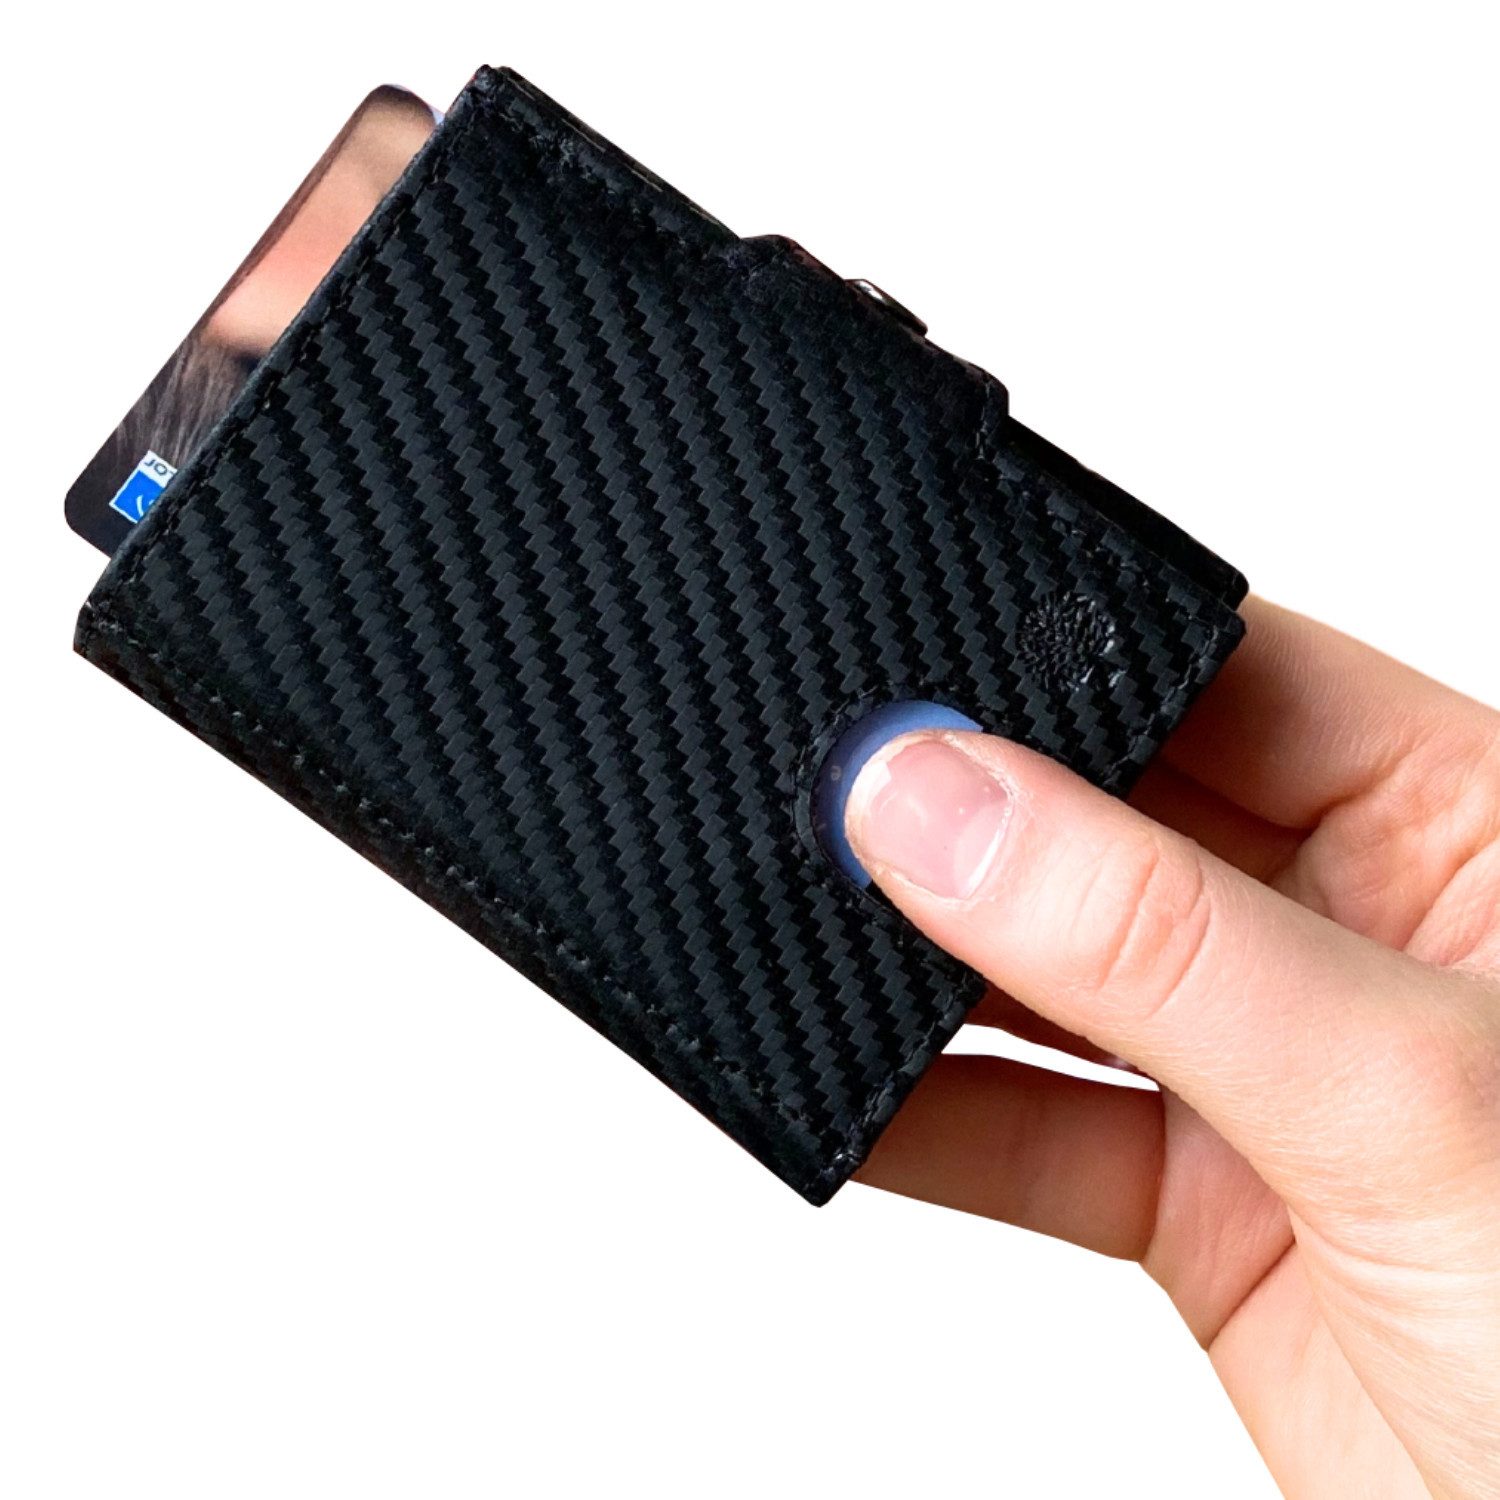 Frentree Mini Geldbörse Slim Wallet mit RFID-Schutz - Geldbörse aus echtem Leder - Mini, Geldbeutel mit Münzfach - Echtleder Portemonnaie Kartenetui Klein